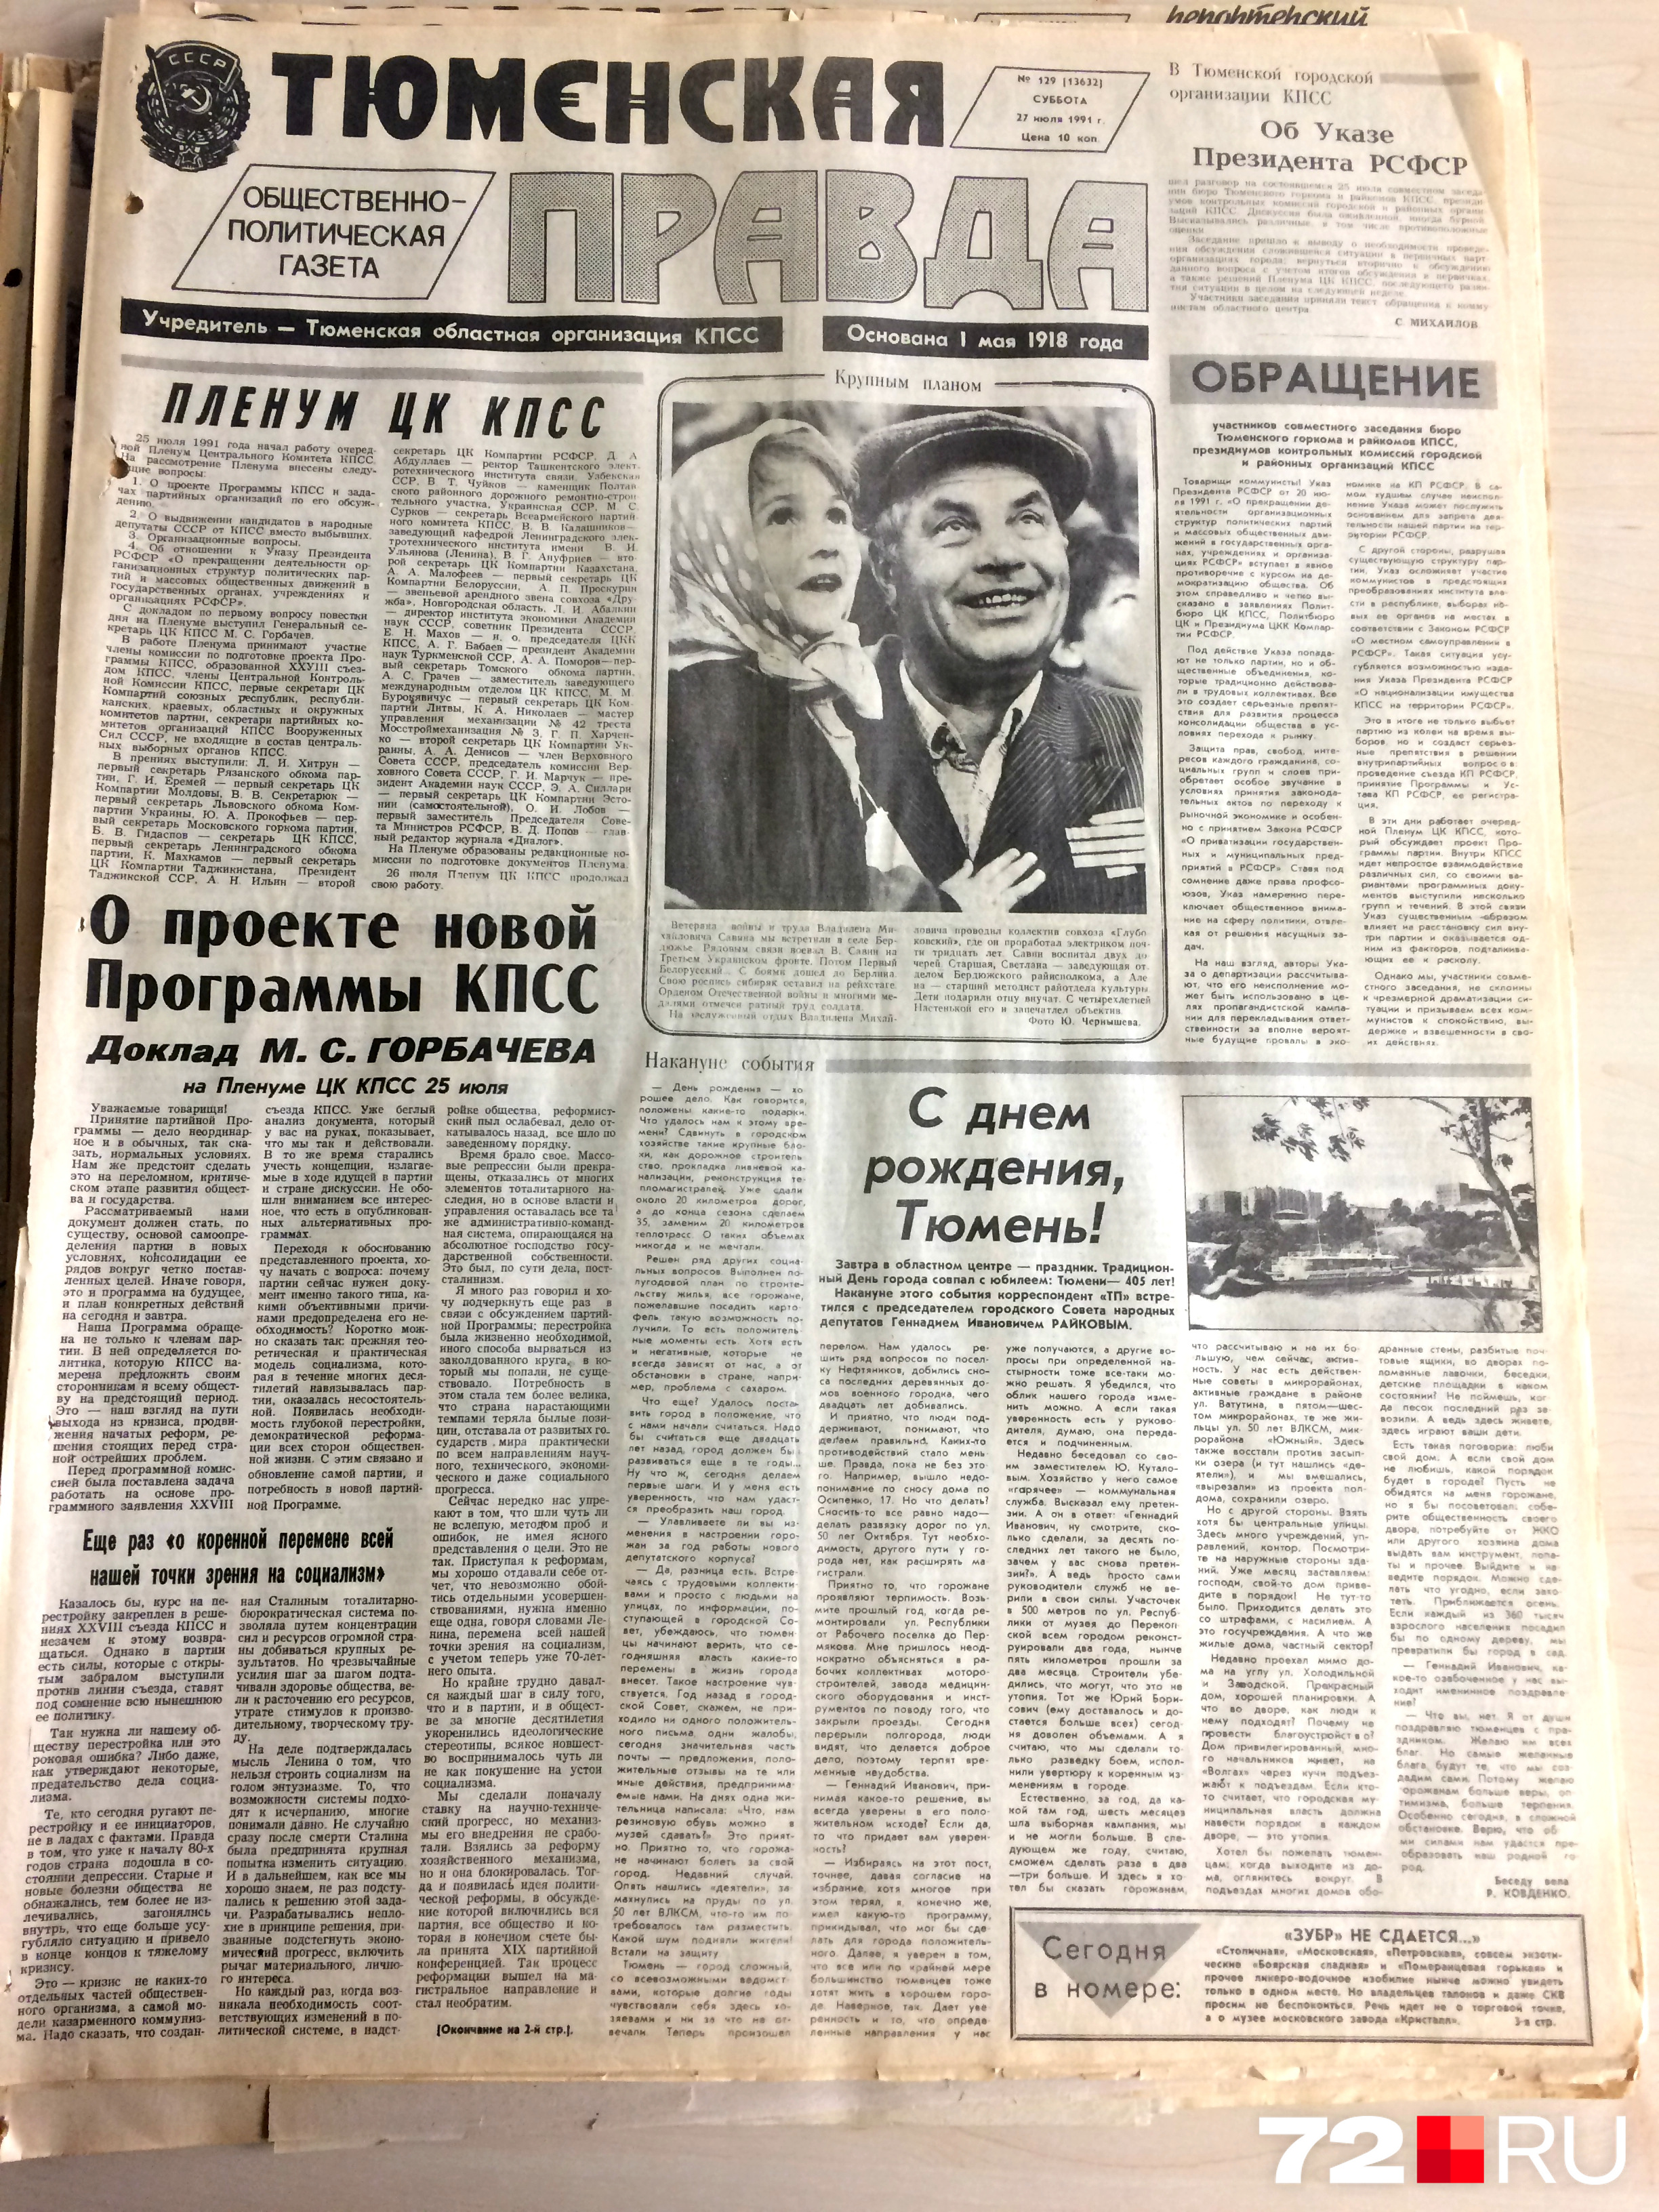 «Тюменская правда». 27 июля, суббота, 1991 год. Цена — 10 копеек